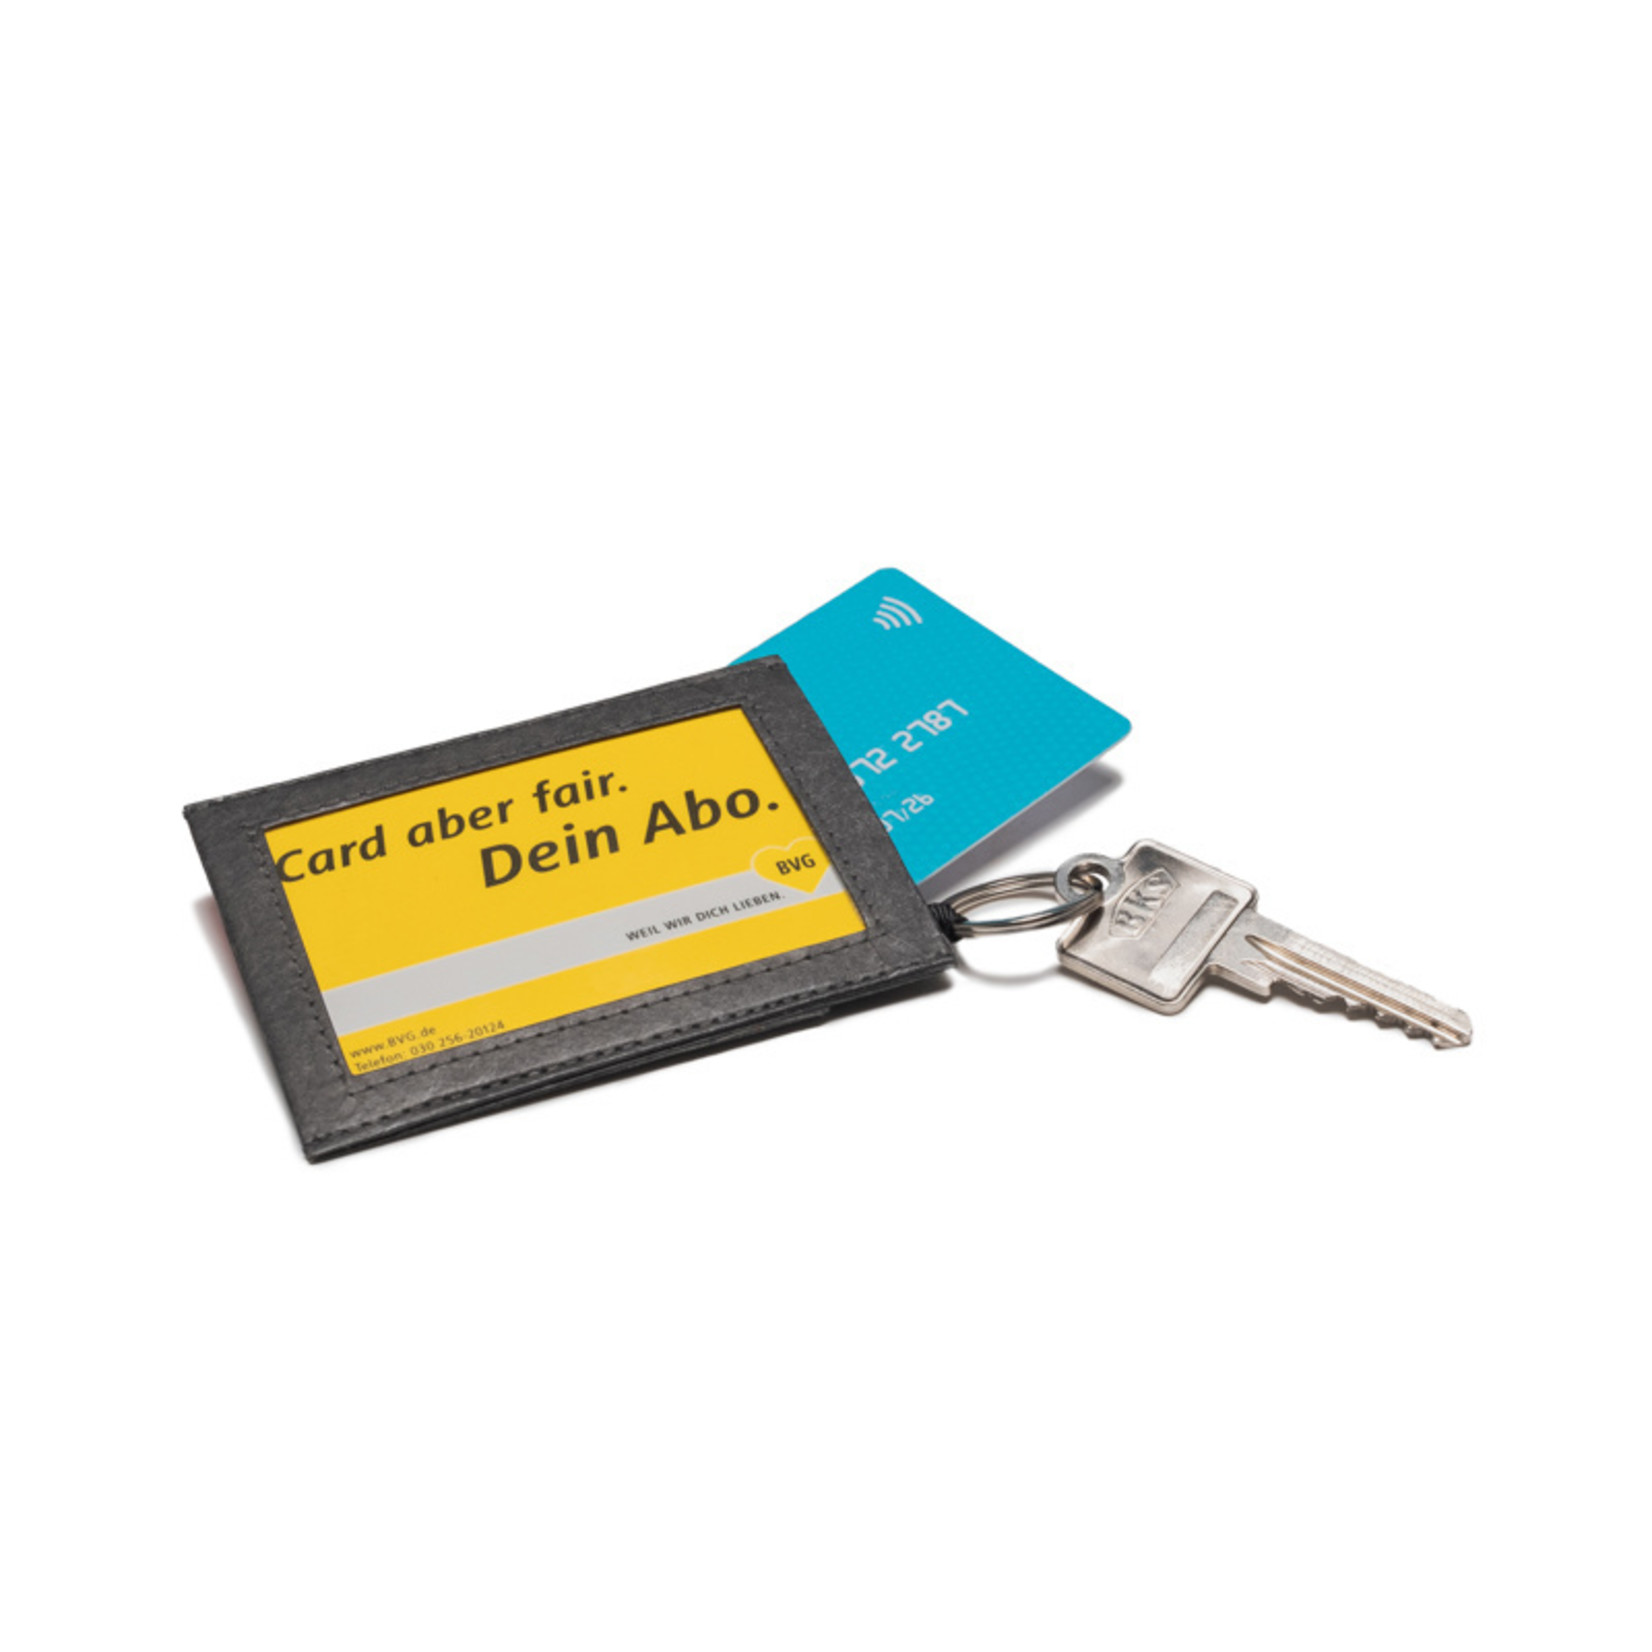 Paprcuts RFID Portemonnaie Pro - Just Black Tyvek